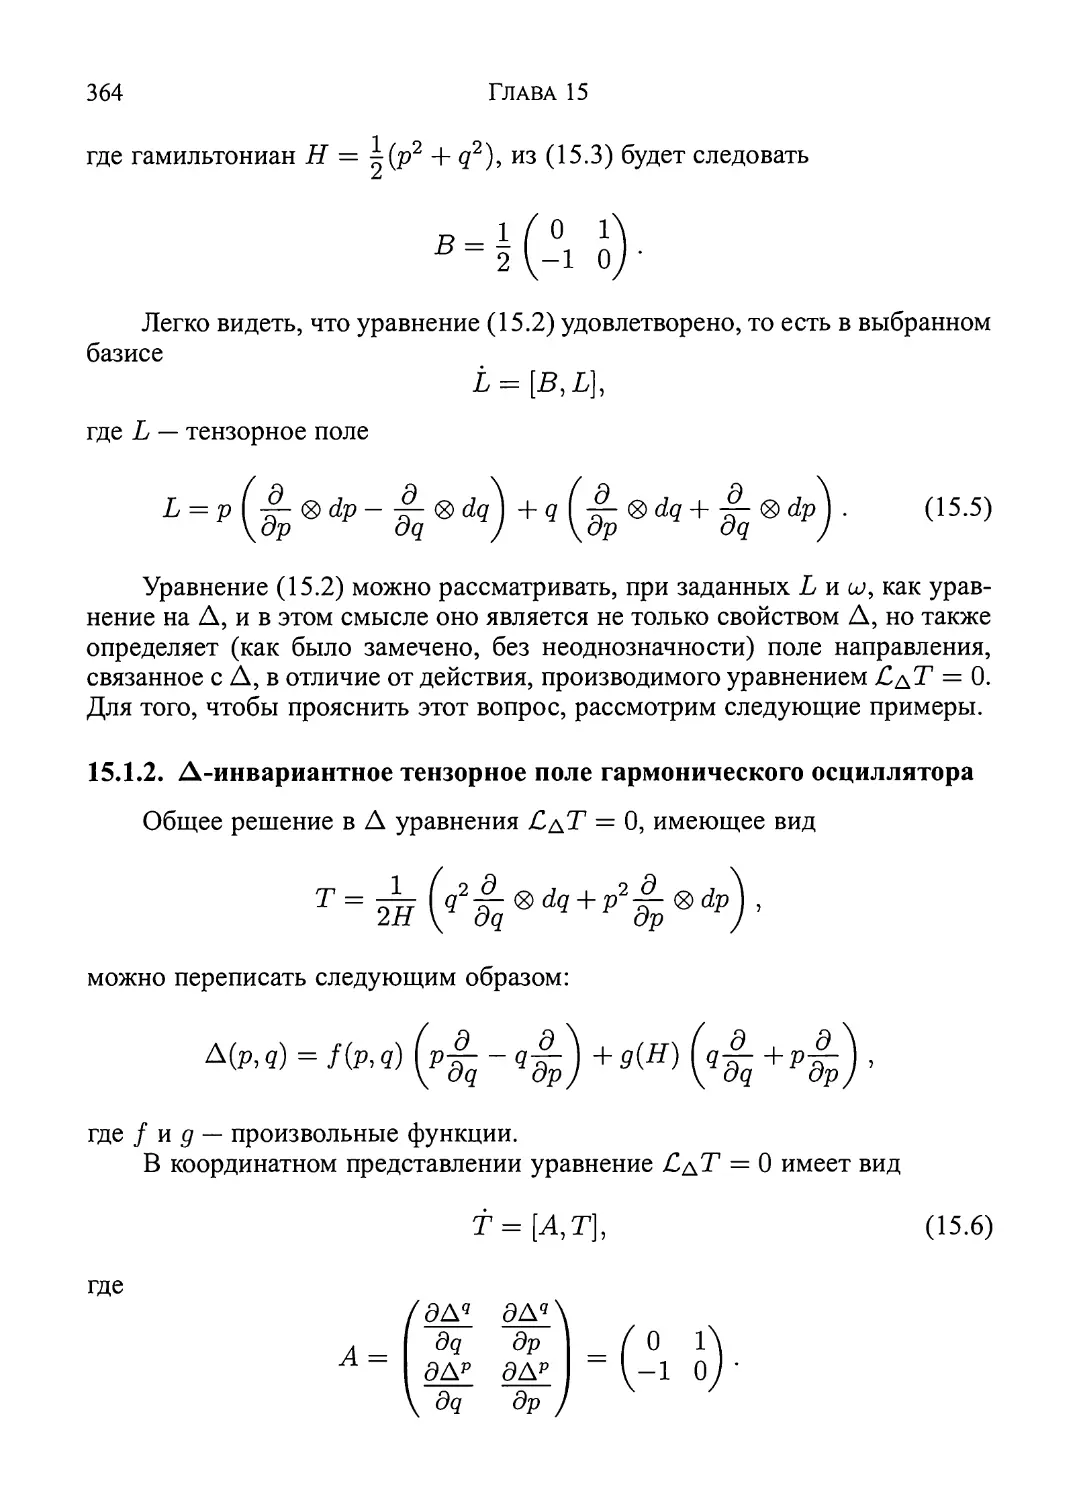 15.1.2.  Δ-инвариантное  тензорное  поле  гармонического  осциллятора